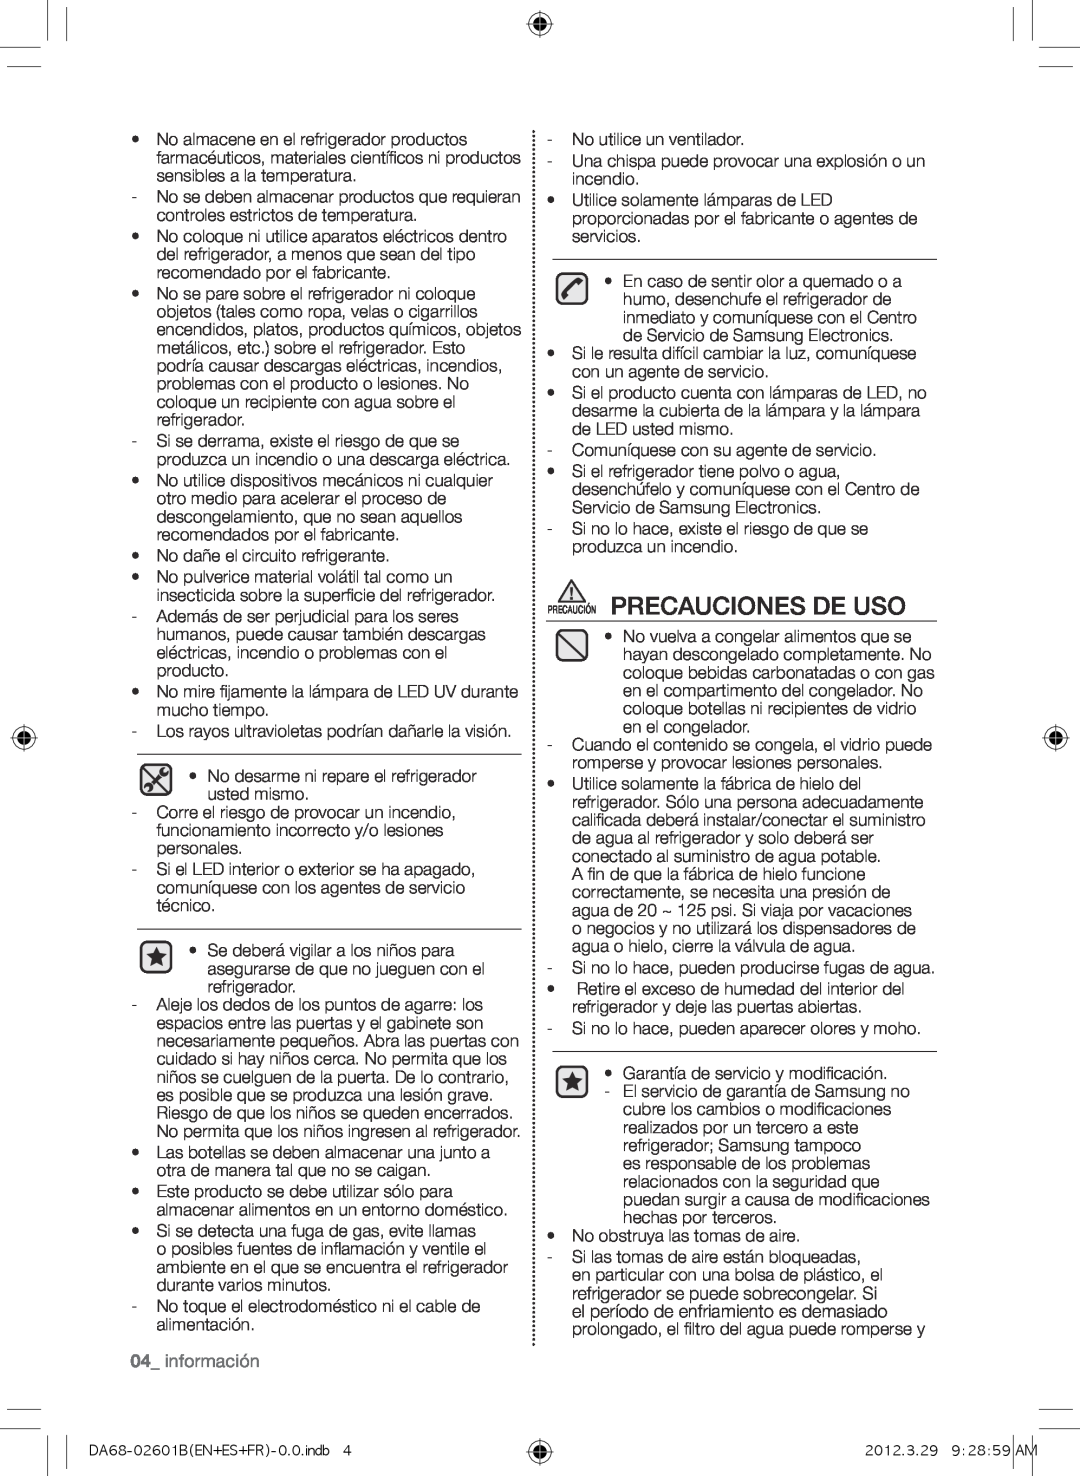 Samsung RF260BEAEWW, GI6FARXXQ, GI6FARXXY, RF260BEAESP, RF261BEAESP user manual Precaución Precauciones De Uso, 04_ información 